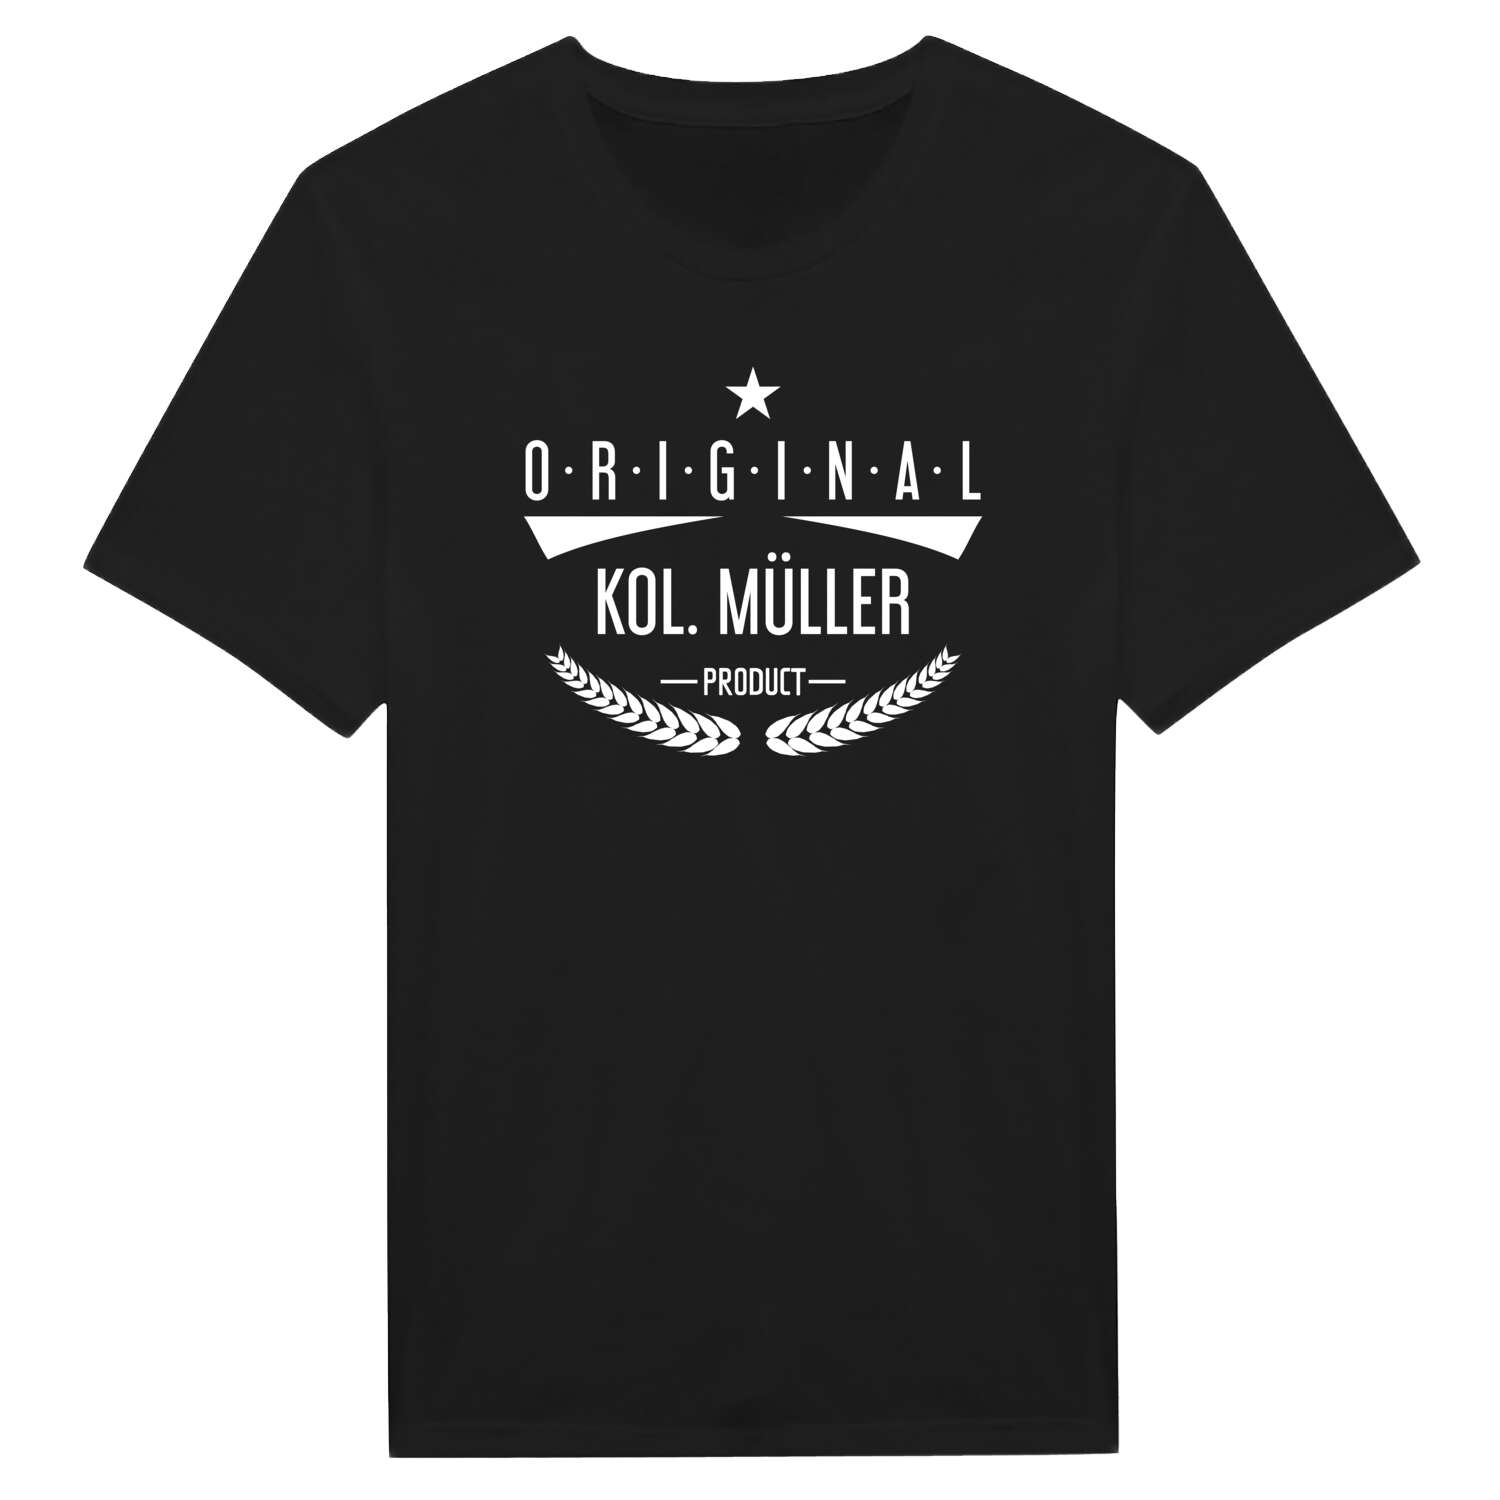 Kol. Müller T-Shirt »Original Product«